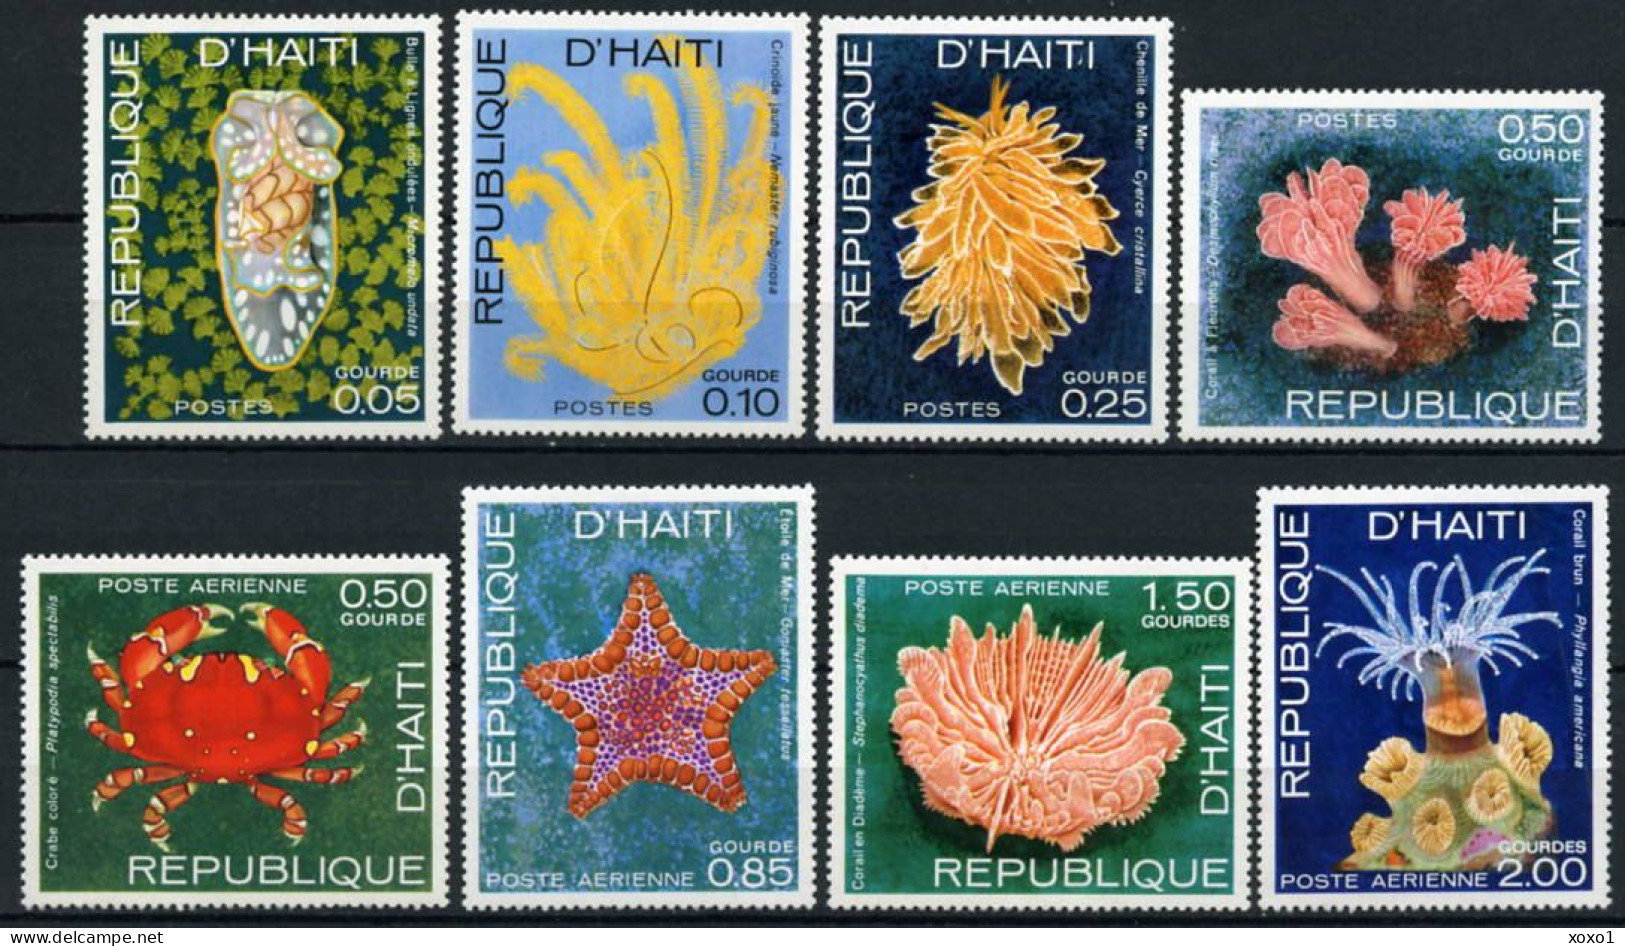 Haiti 1973 MiNr. 1225 - 1232  Marine Life, Crustaceans 8v  MNH** 3.20 € - Marine Life